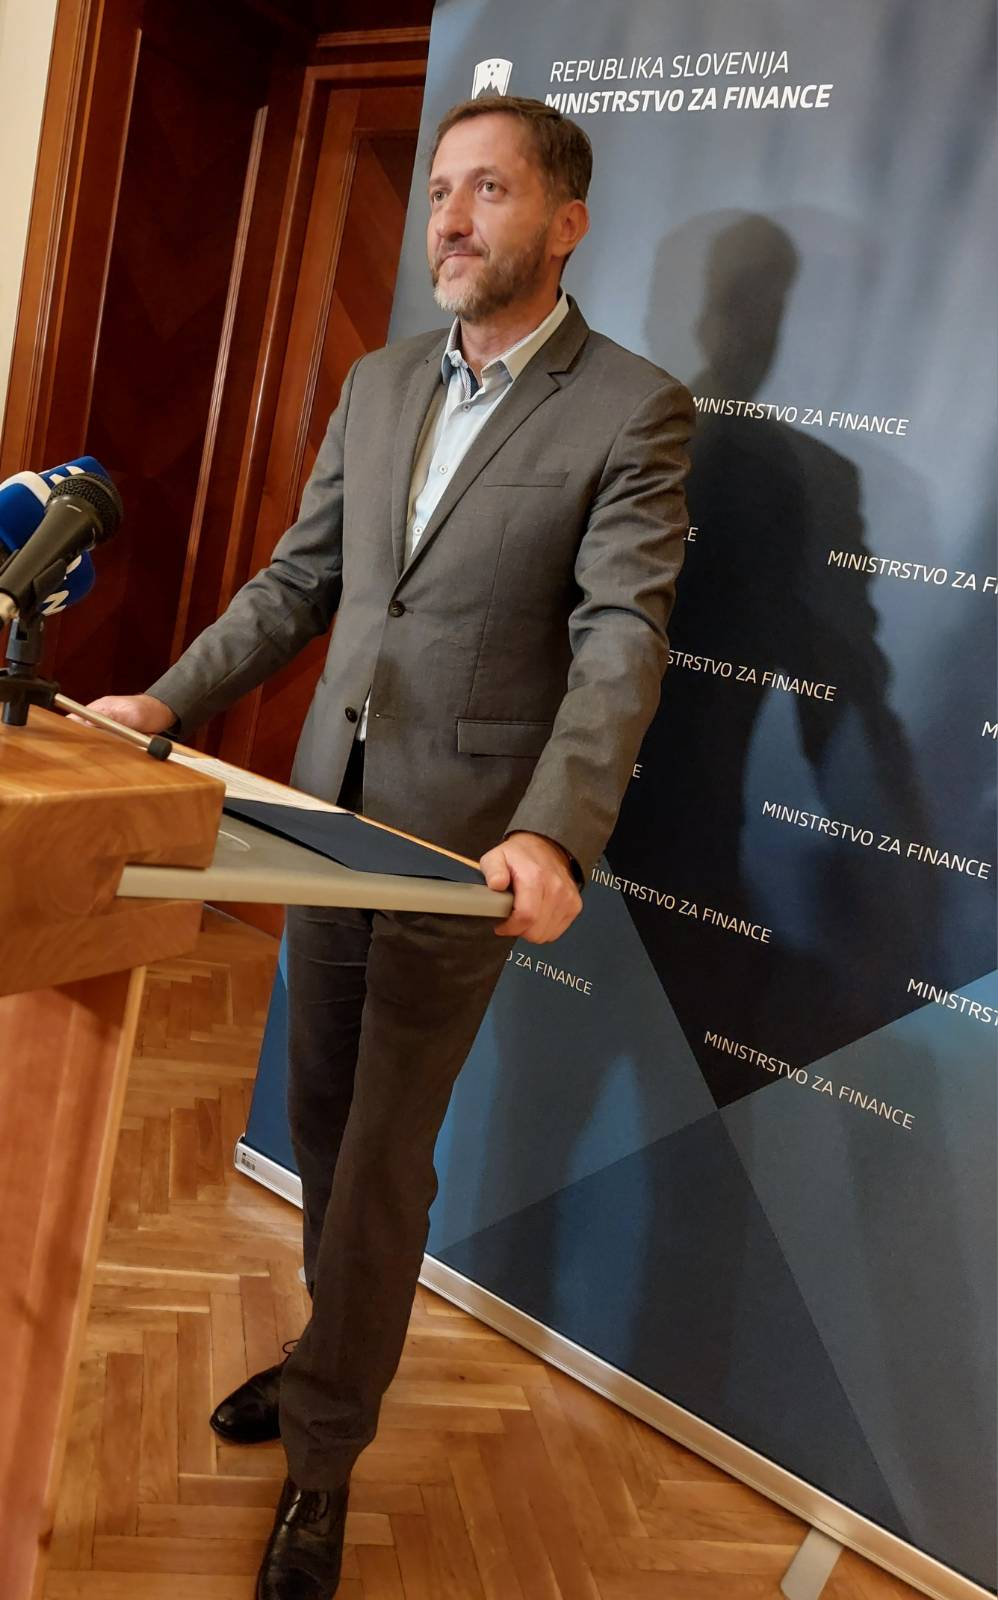 (V ŽIVO) Minister za finance Klemen Boštjančič o “prispevku bank za obnovo države”